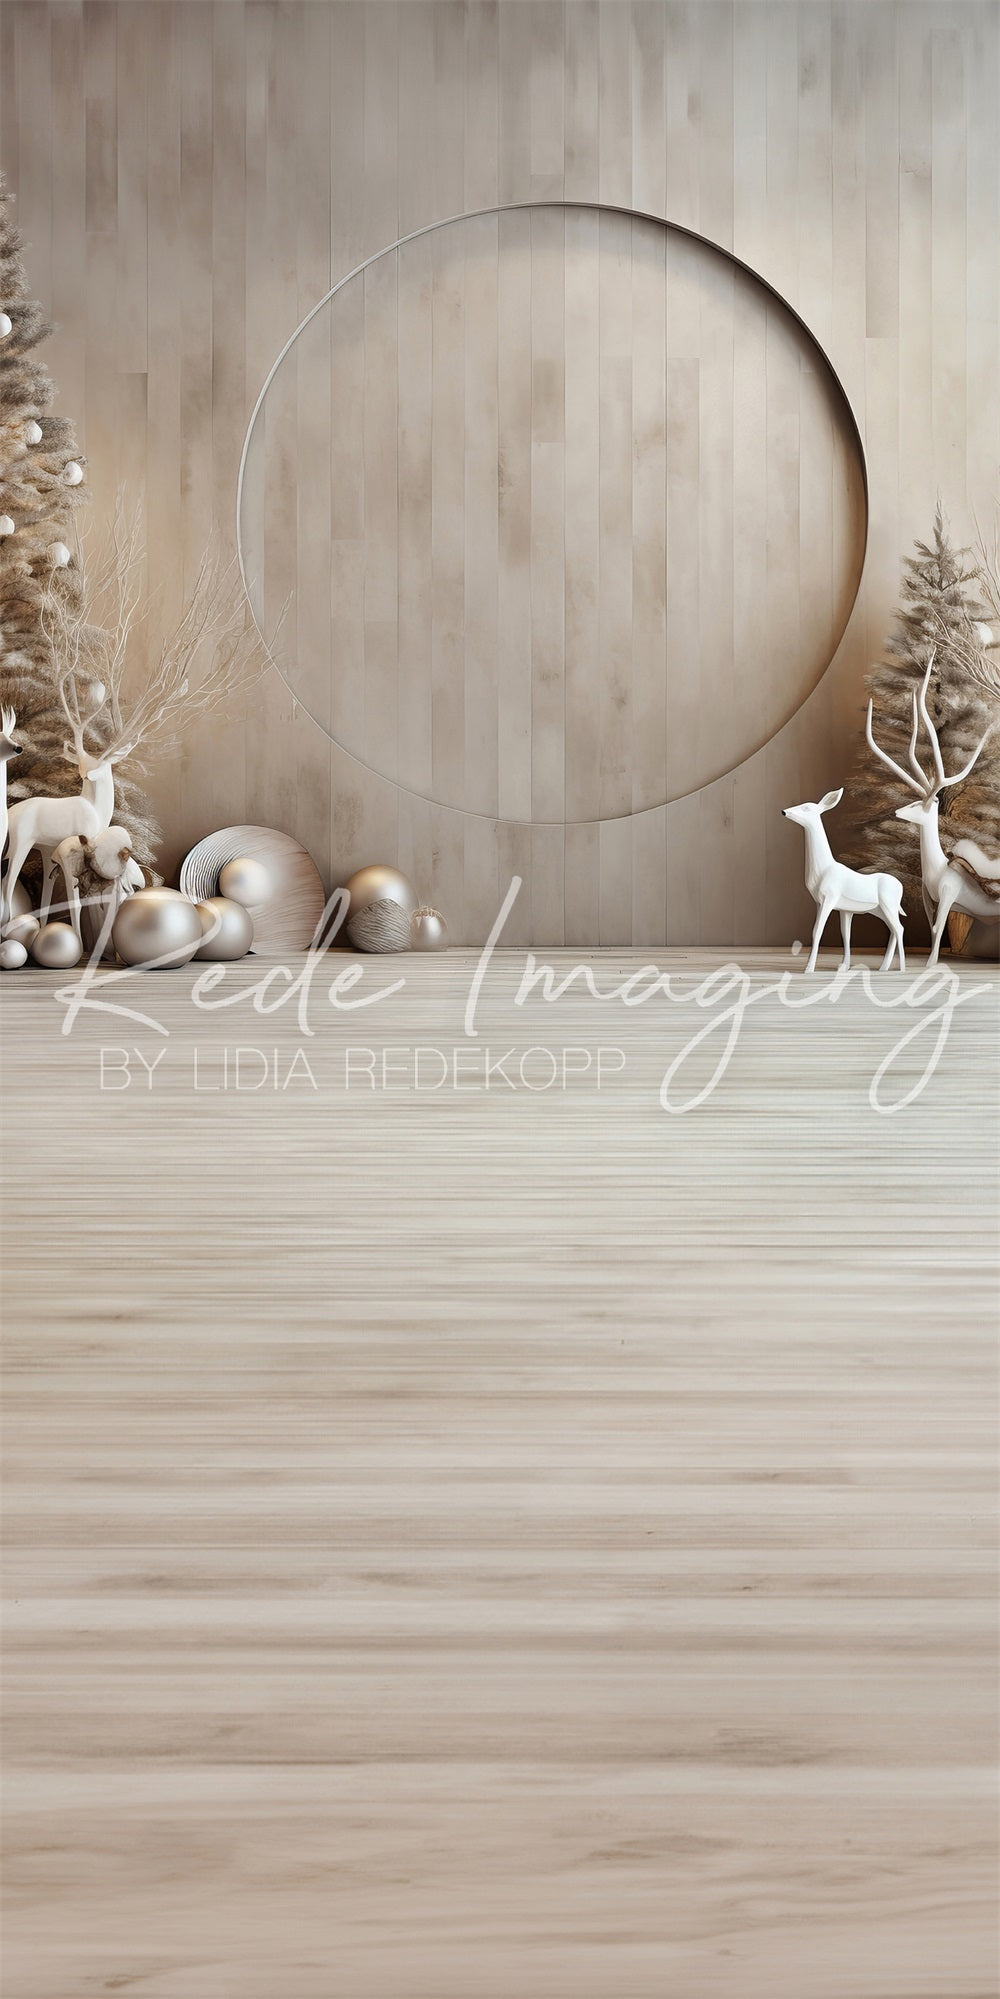 Sweep Doe a Deer Kerstachtergrond Ontworpen door Lidia Redekopp